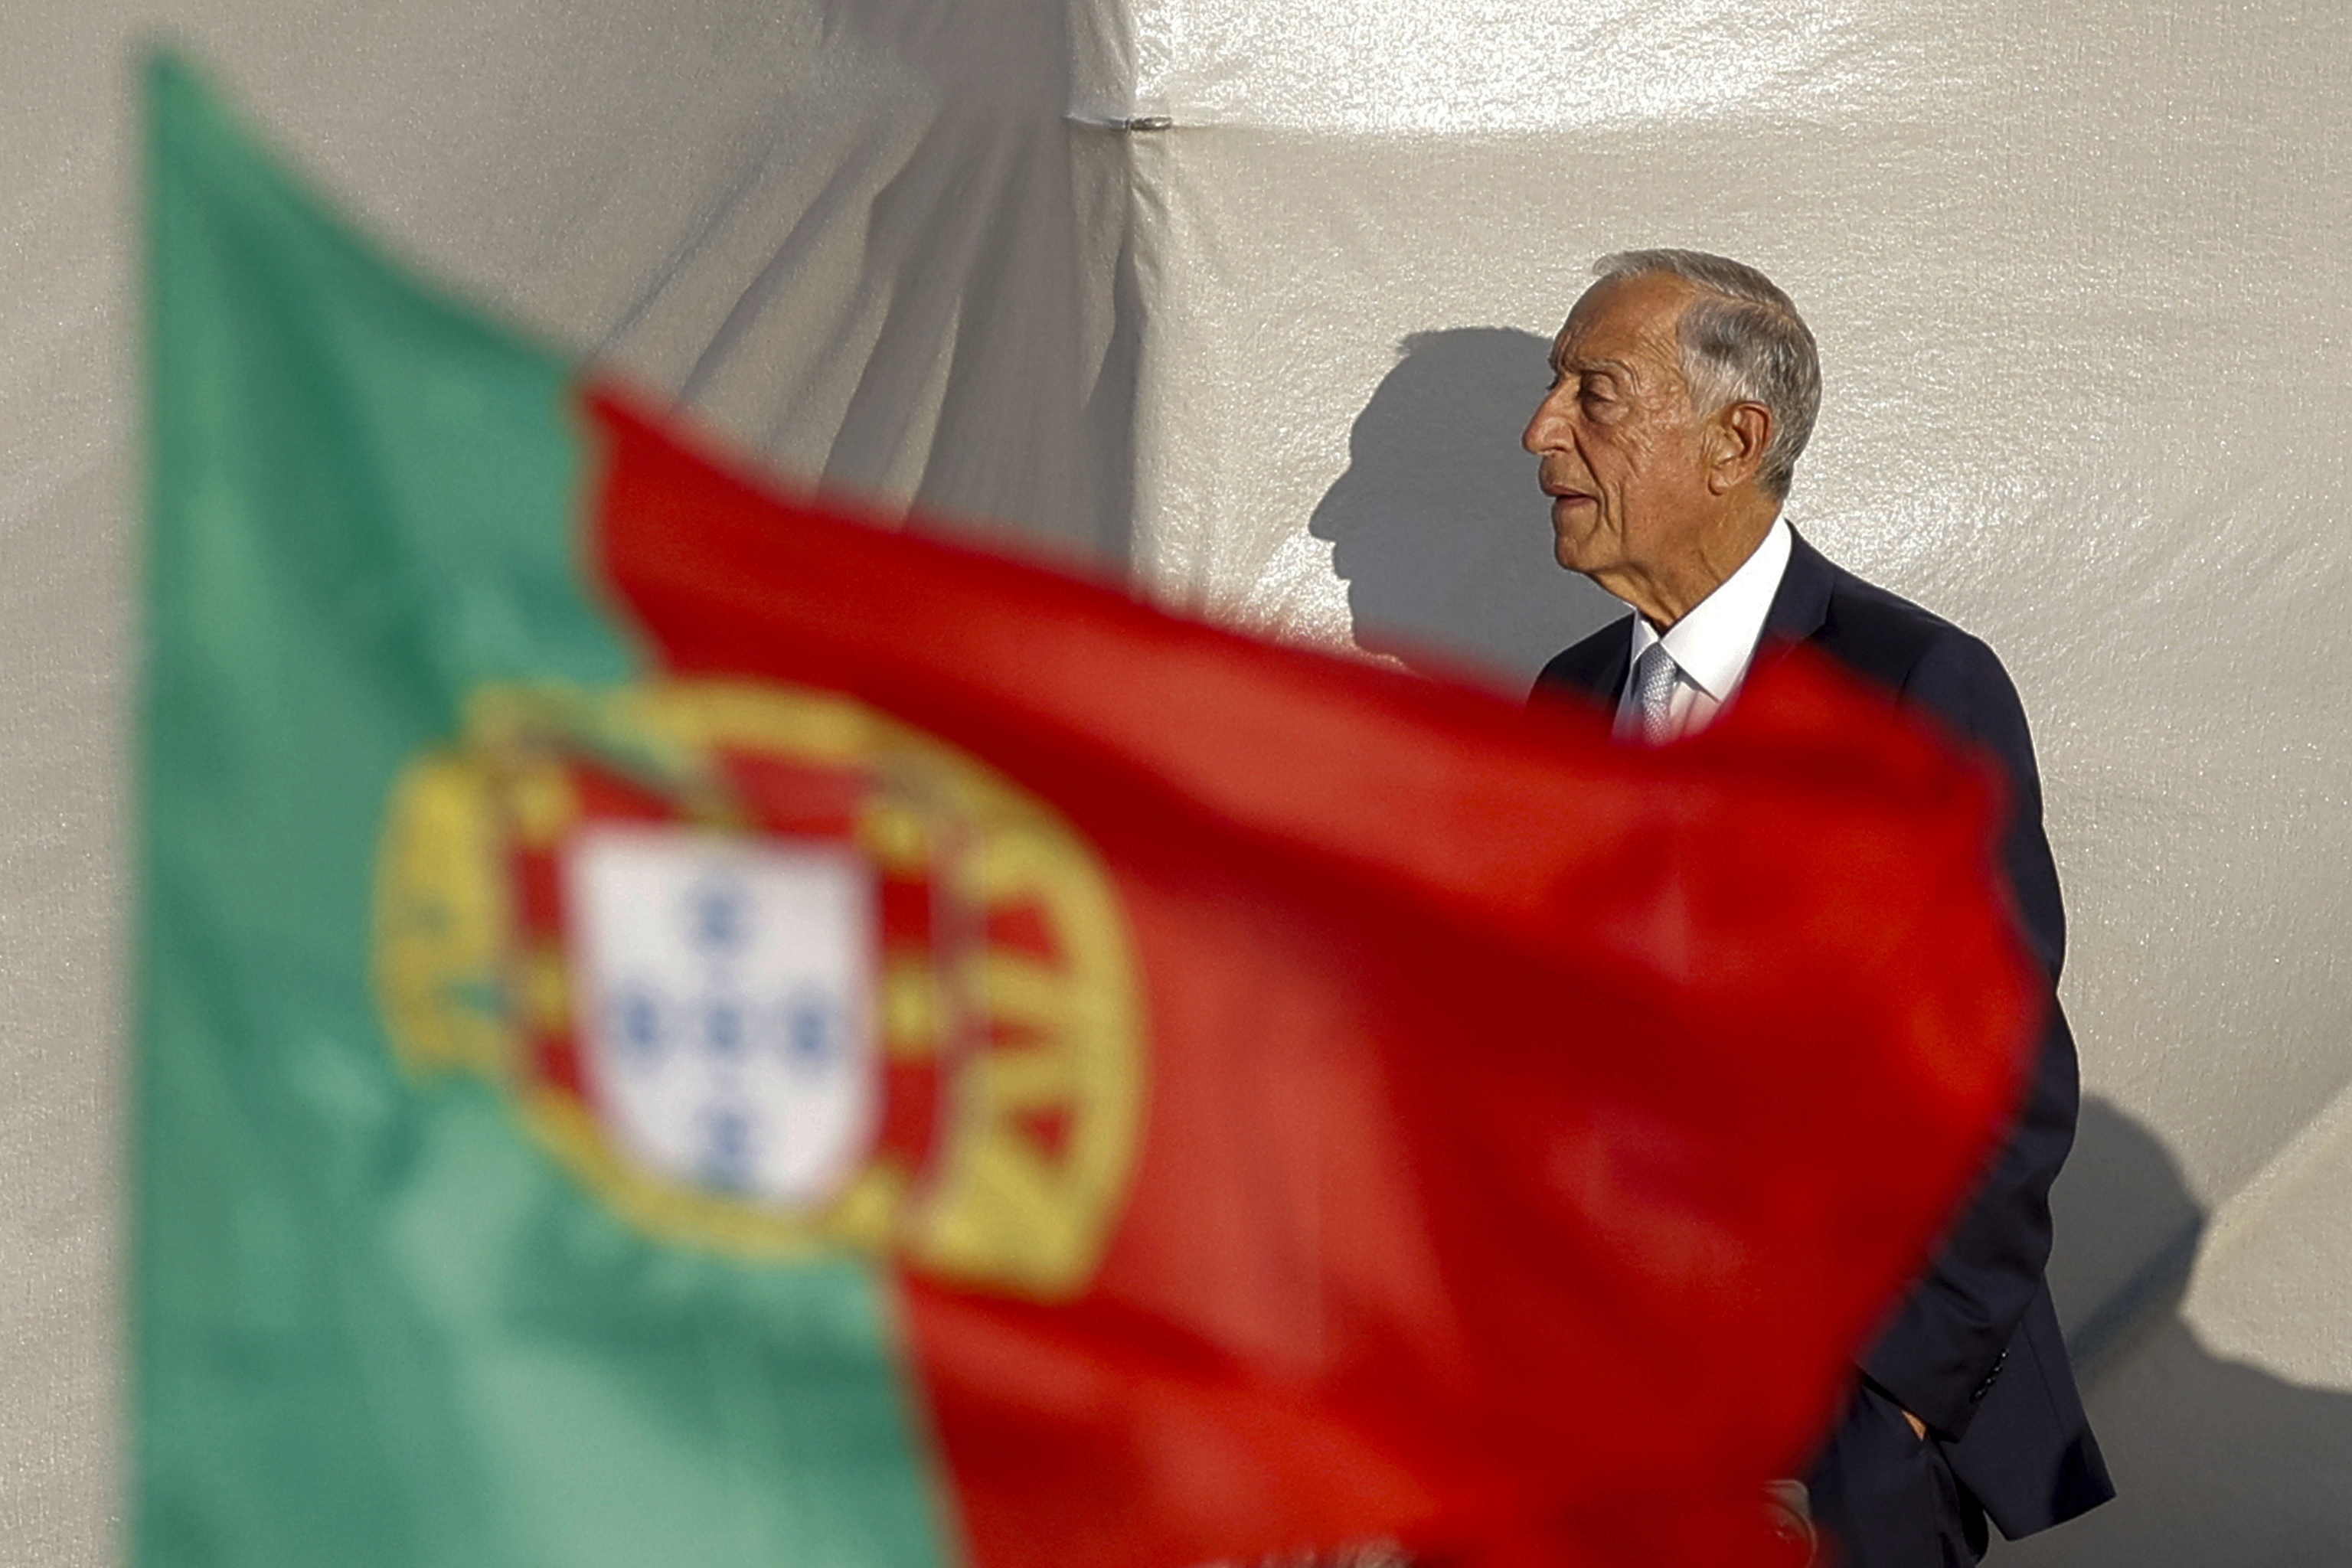 El presidente de Portugal, Marcelo Rebelo de Sousa, censurado por su papel en las elecciones